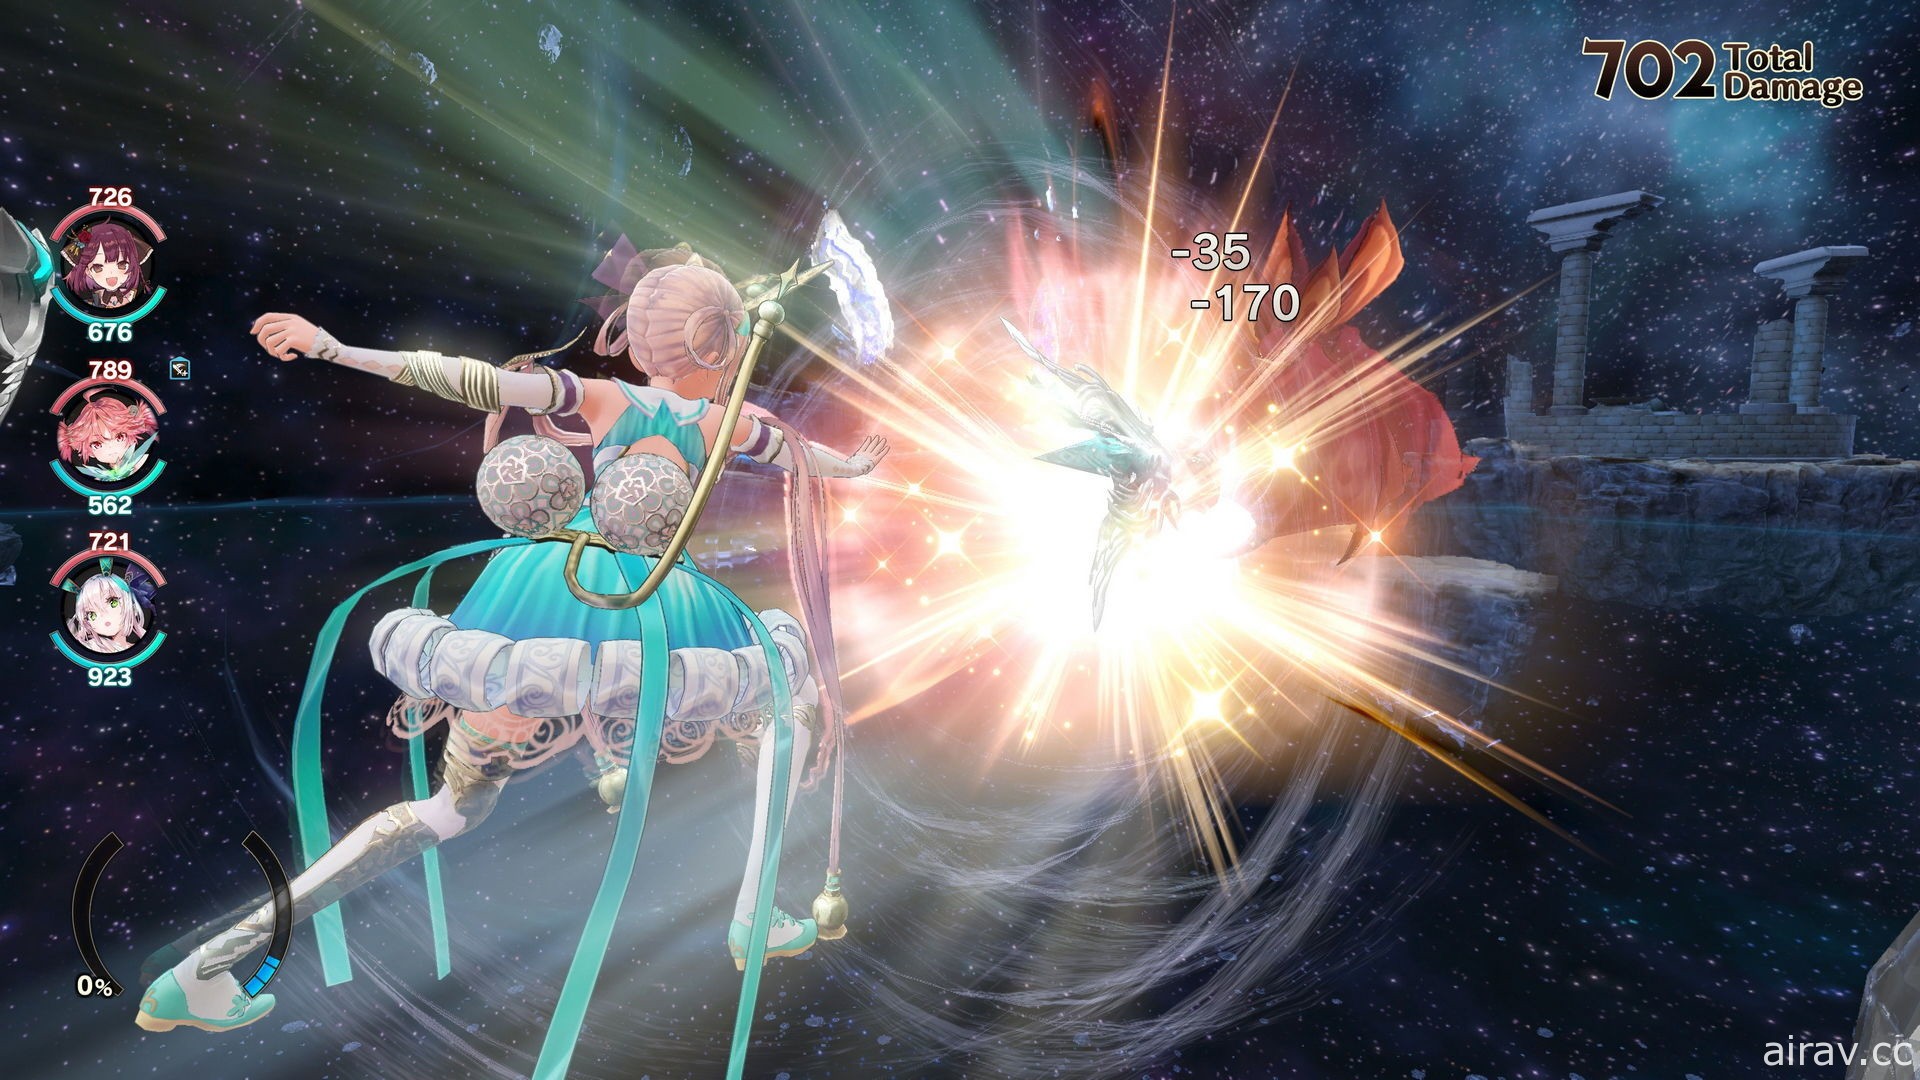 《蘇菲的鍊金工房 2》免費 DLC 第 3 彈開始發布 追加頭目突擊戰和新裝飾品